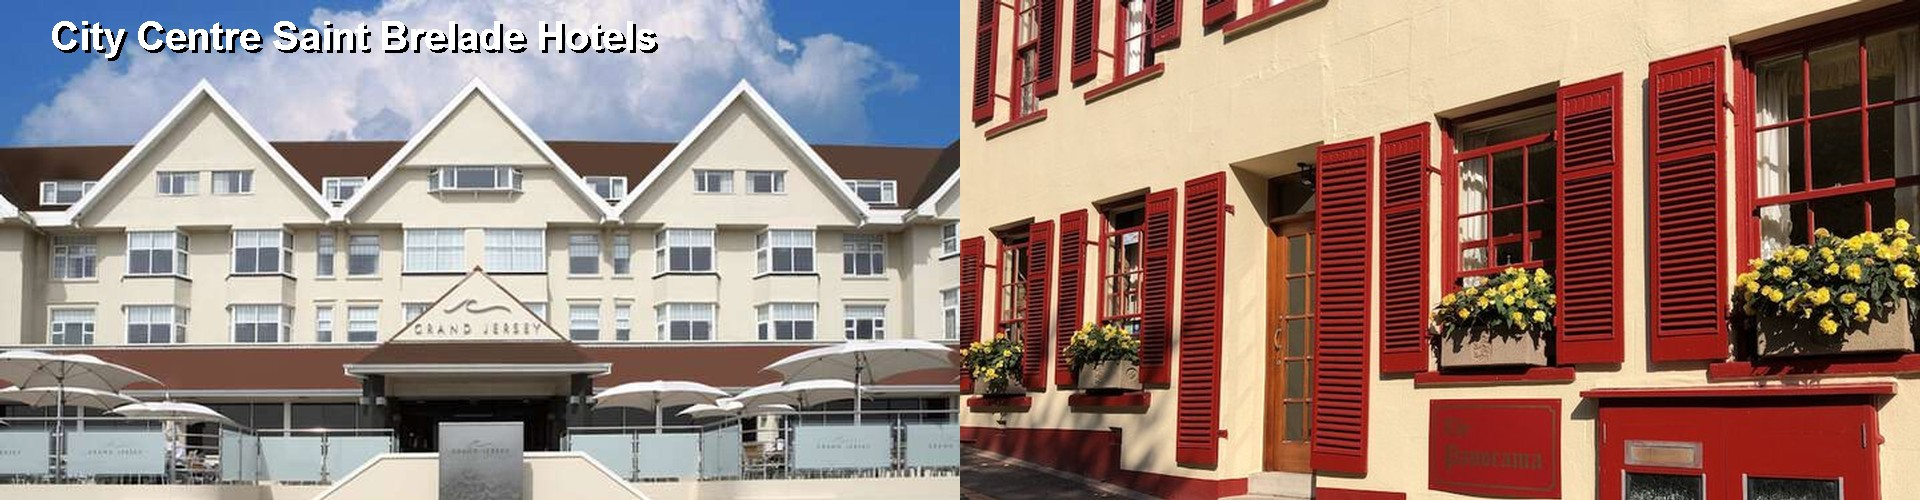 5 Best Hotels near City Centre Saint Brelade